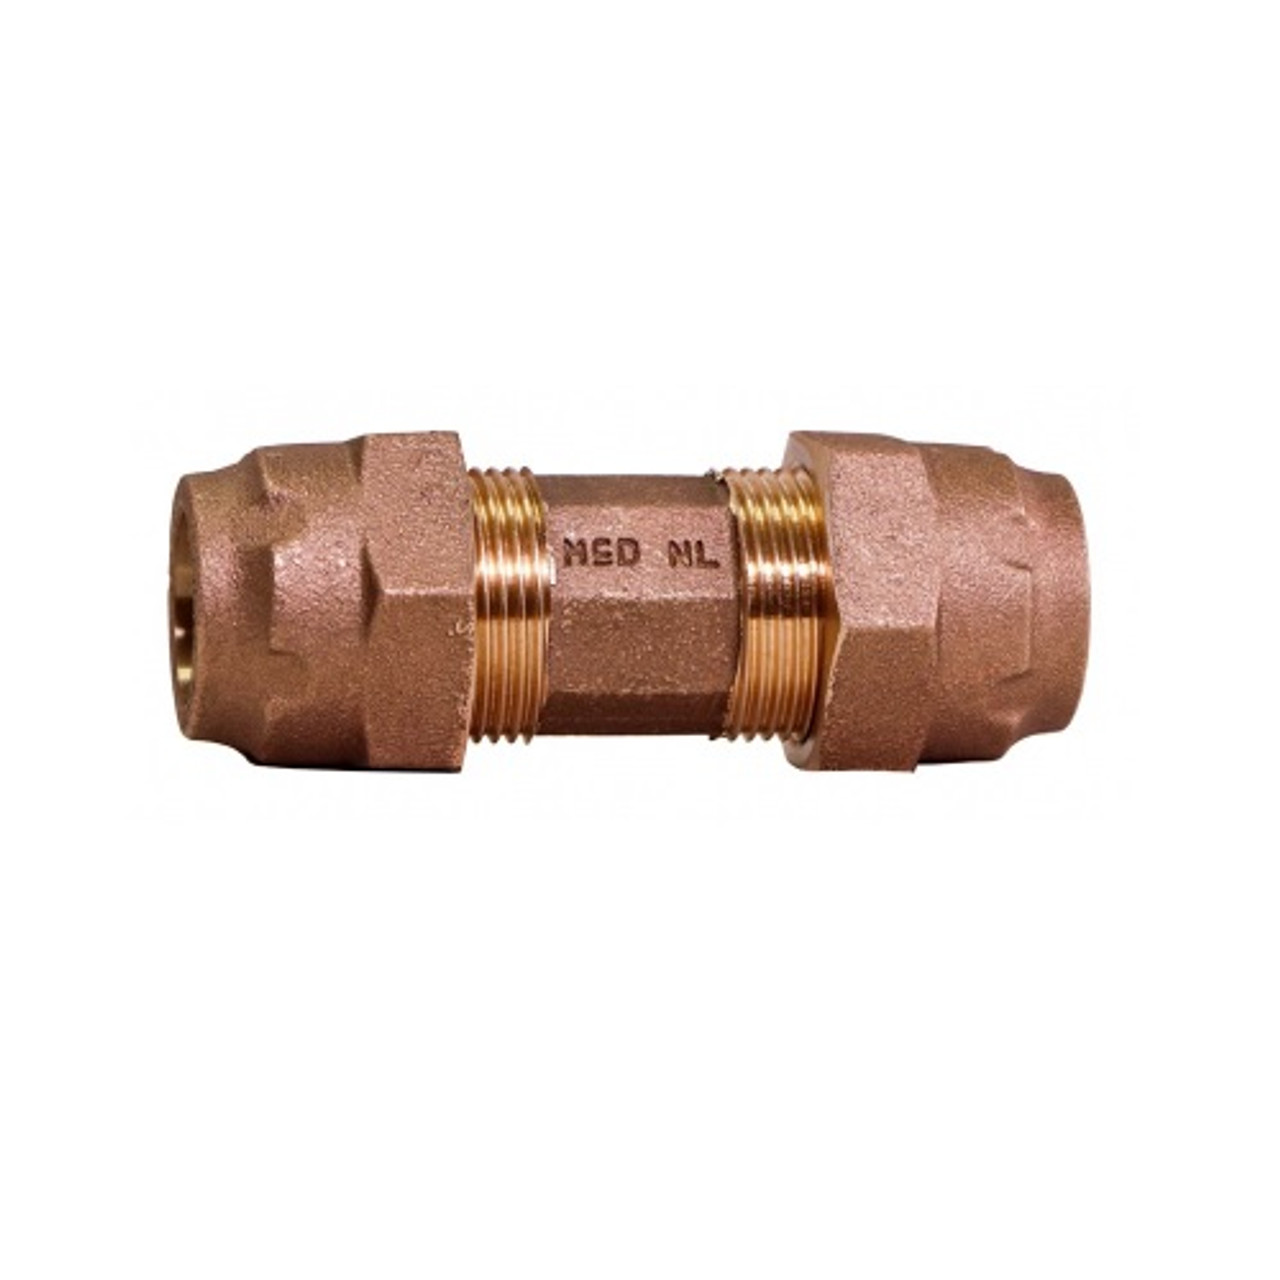 Waterline PEX Copper Tube Compression Adapter, 1/2 x 1/2-in